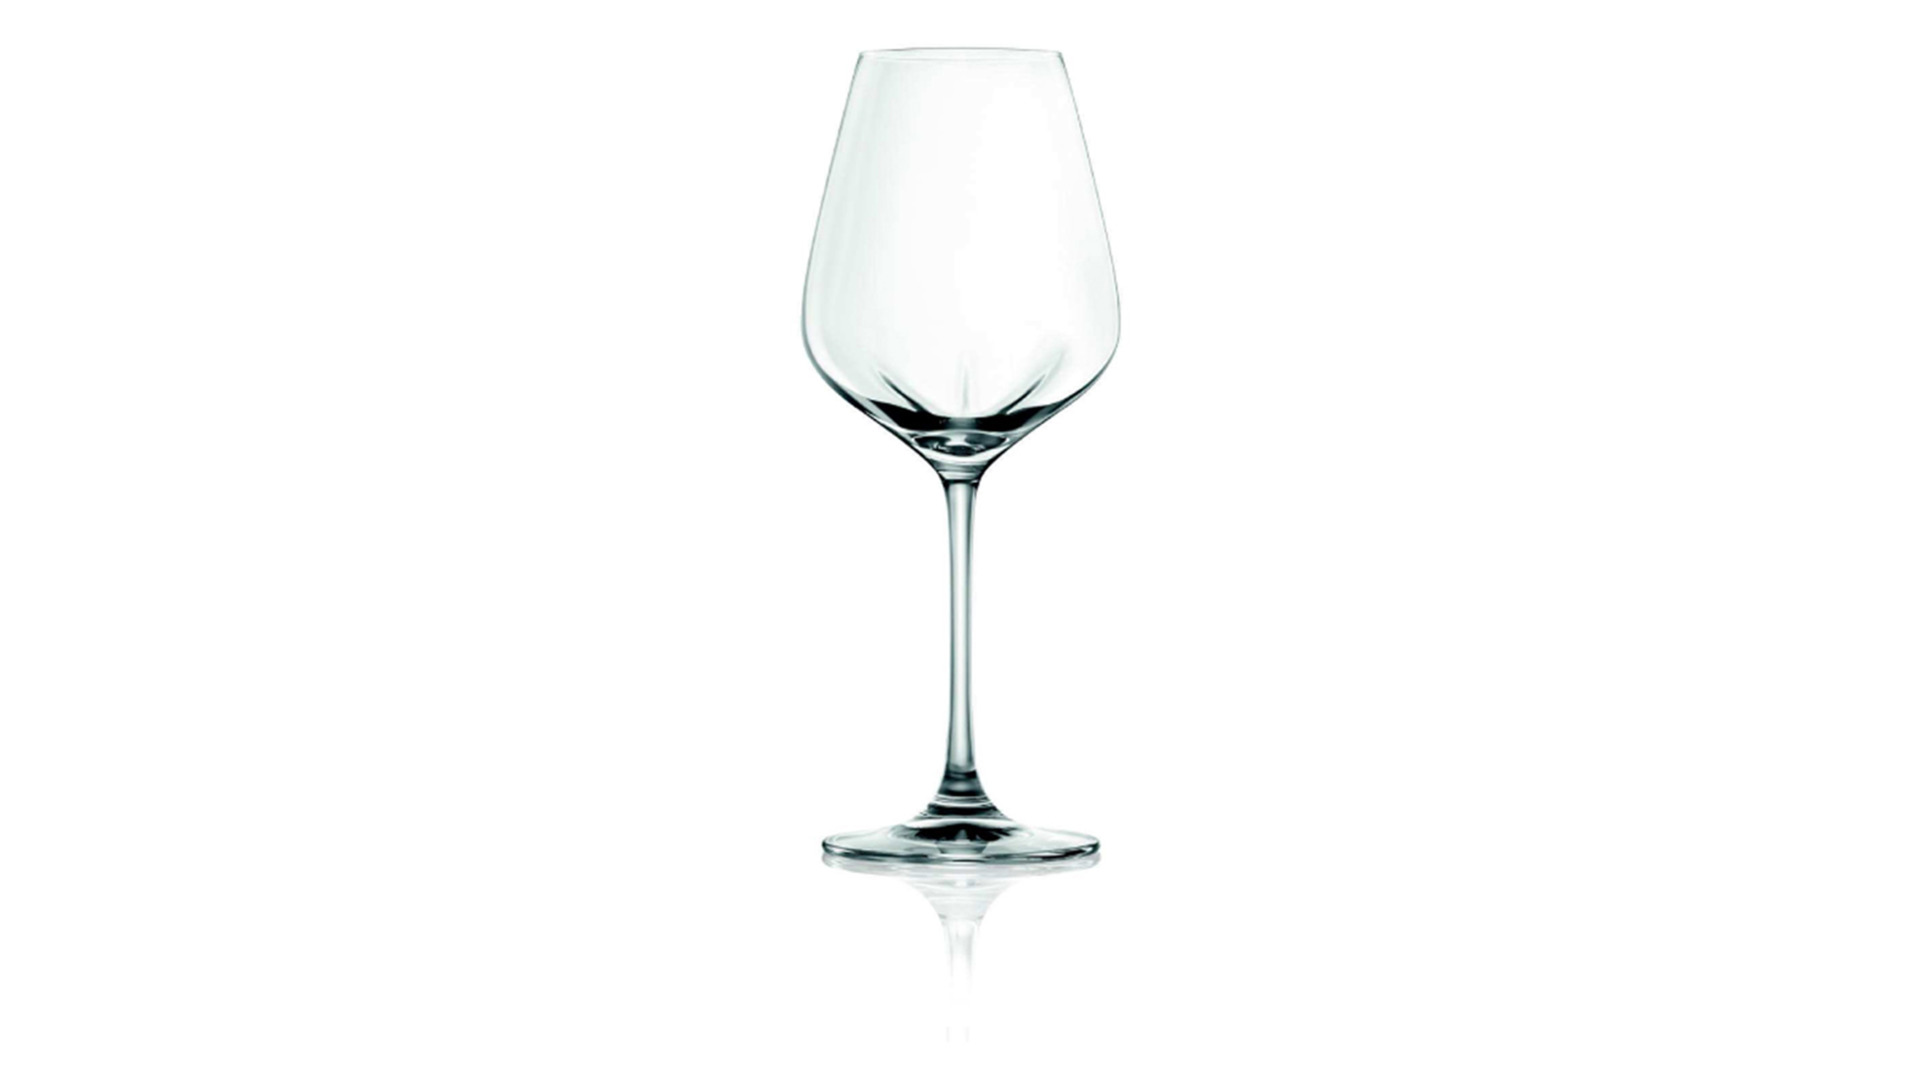 Набор бокалов для белого вина Lucaris Desire 420 мл, 6 шт, стекло хрустальное